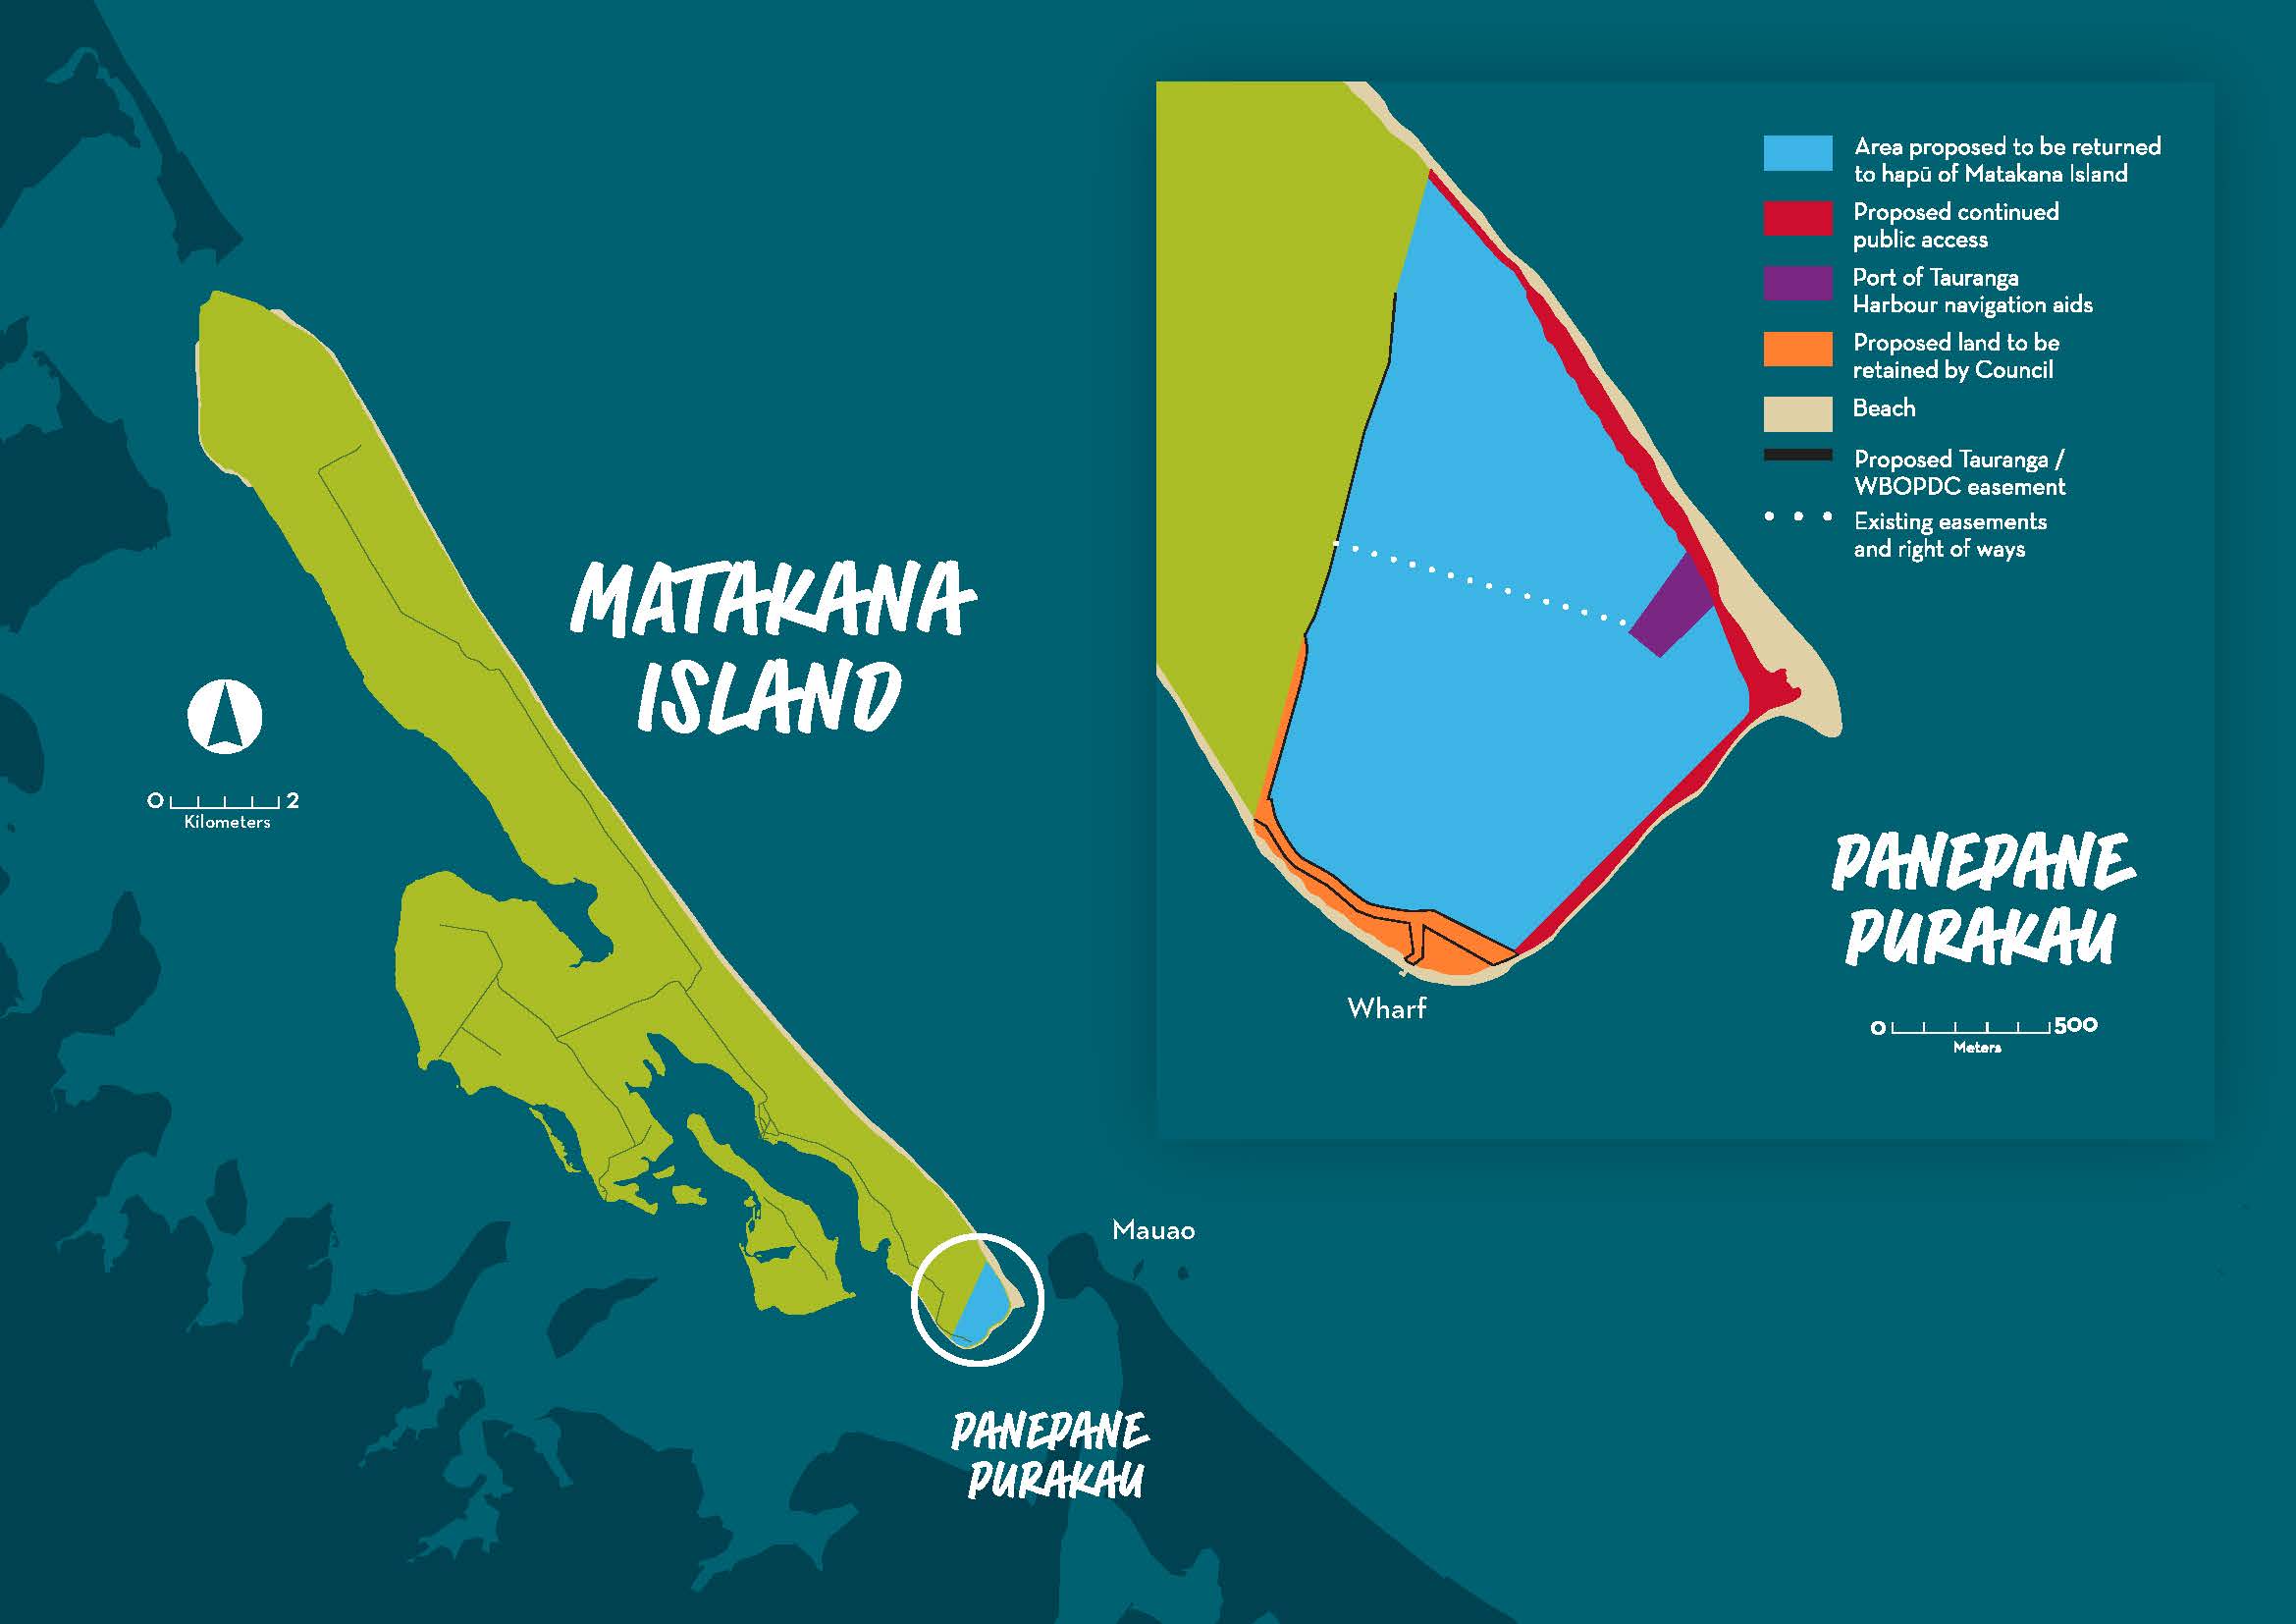 Map showing Panepane Purakau area to be returned to hapu of Matakana Island